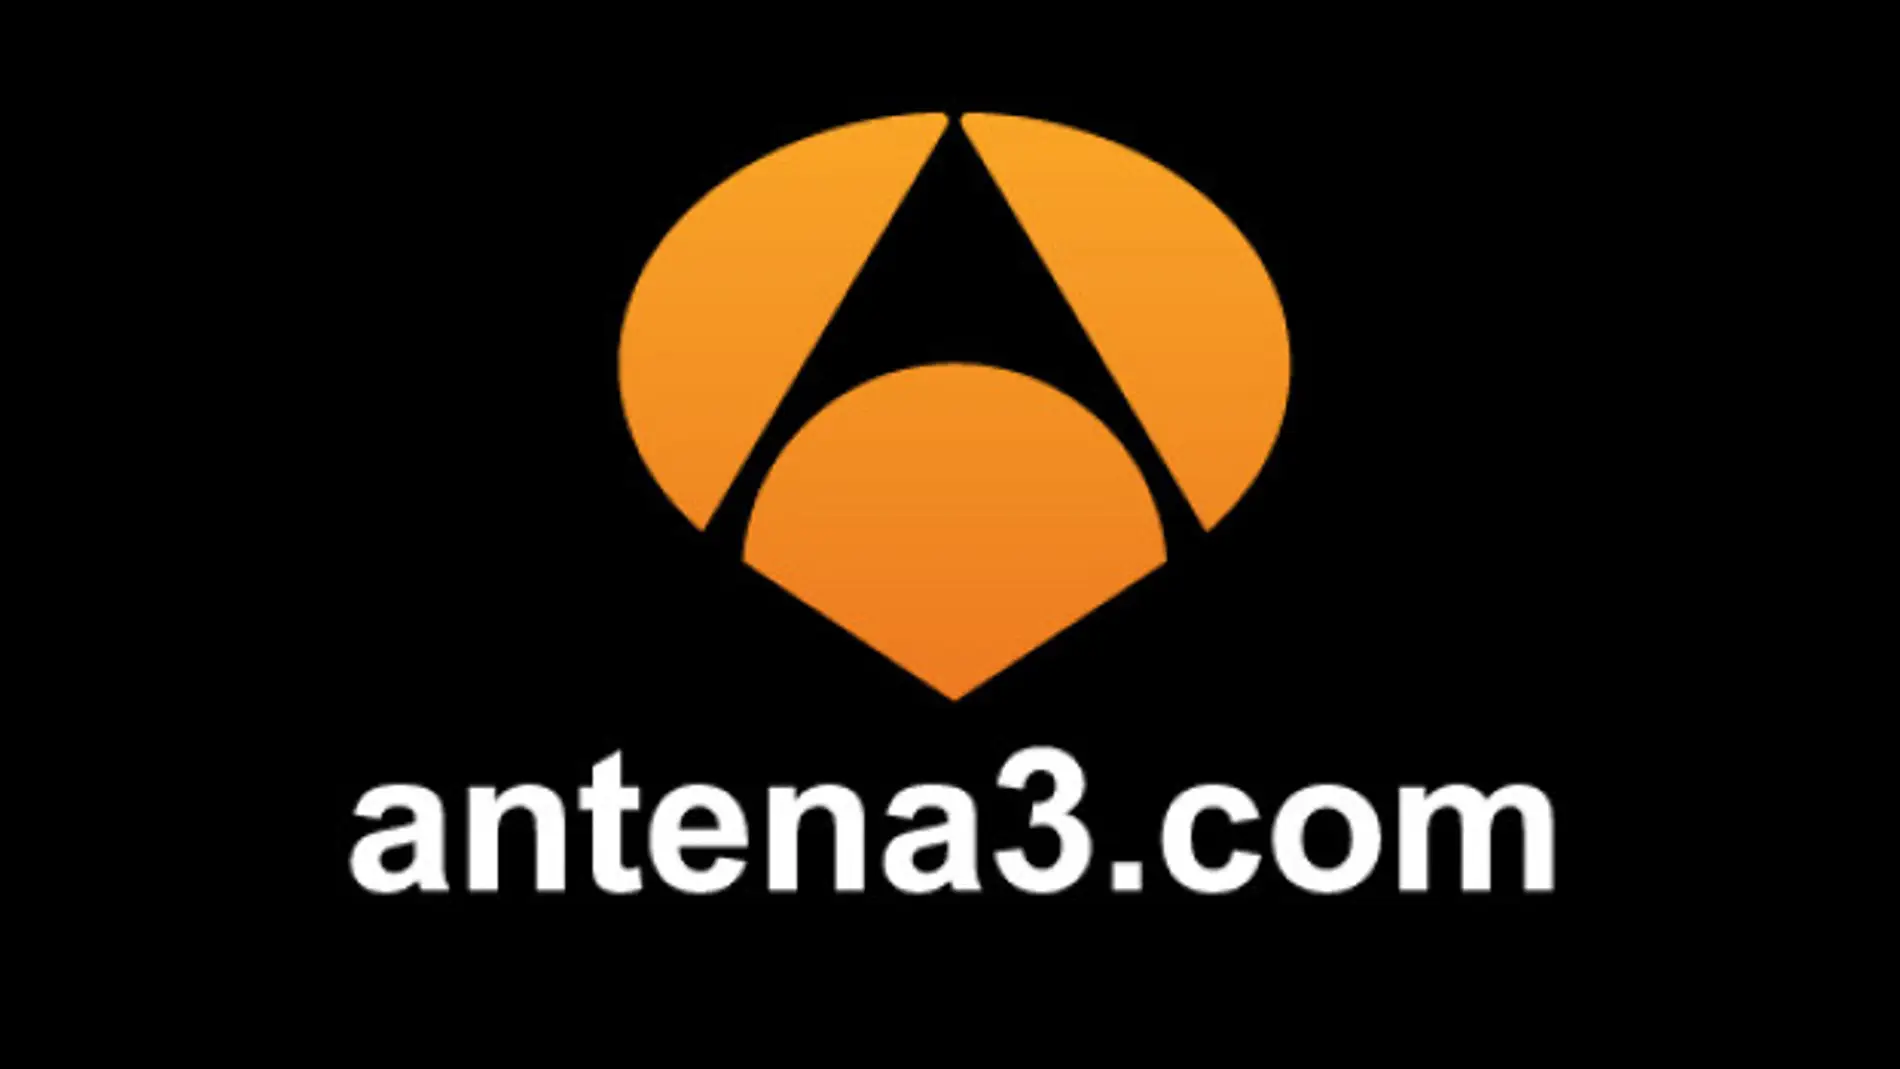 antena3.com